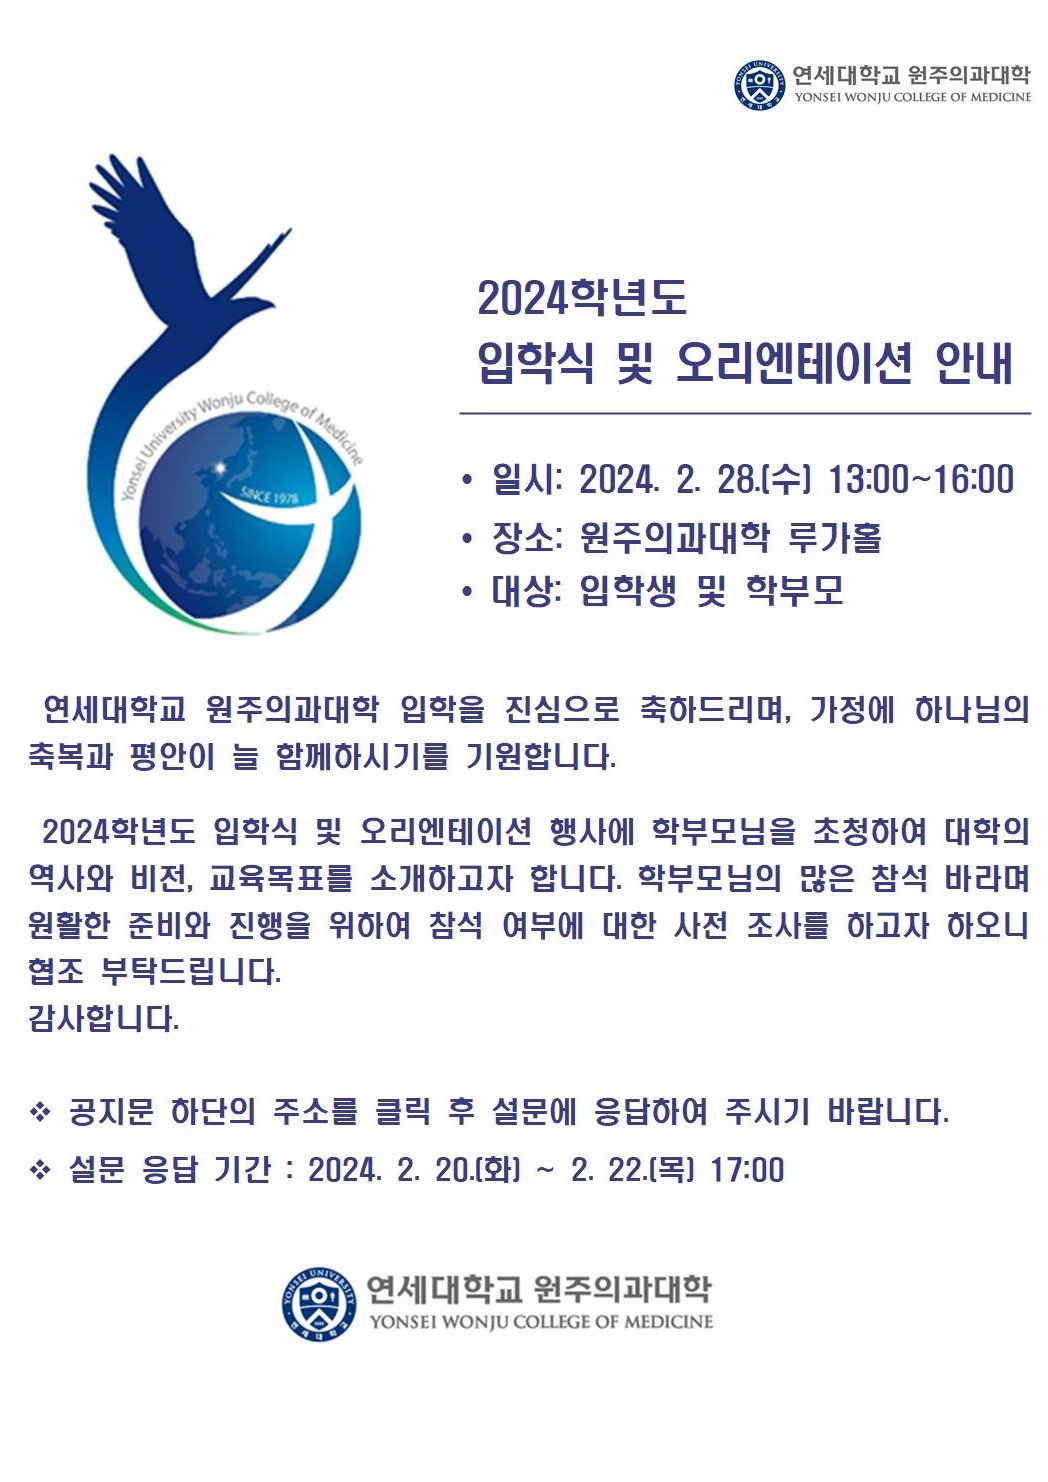 2024 입학식_OT 참여 설문(안)_홈페이지 공지용002.jpg